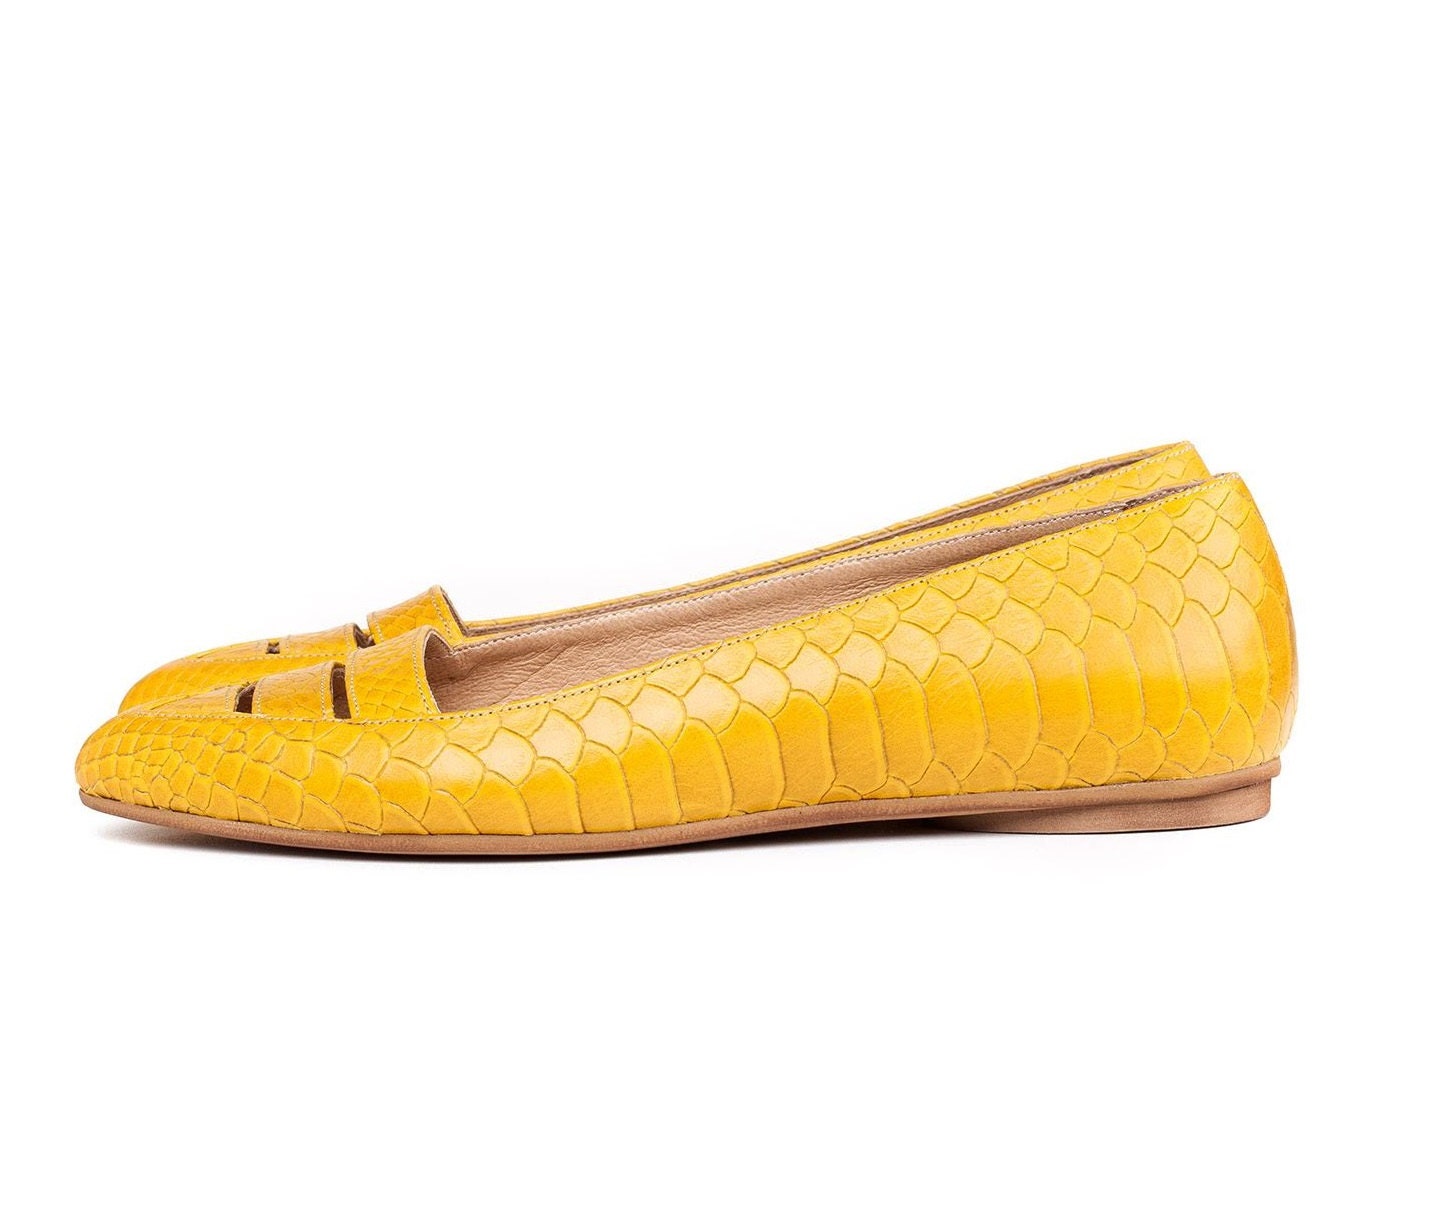 Sale 45% off Yellow flats women shoes yellow shoes. Women